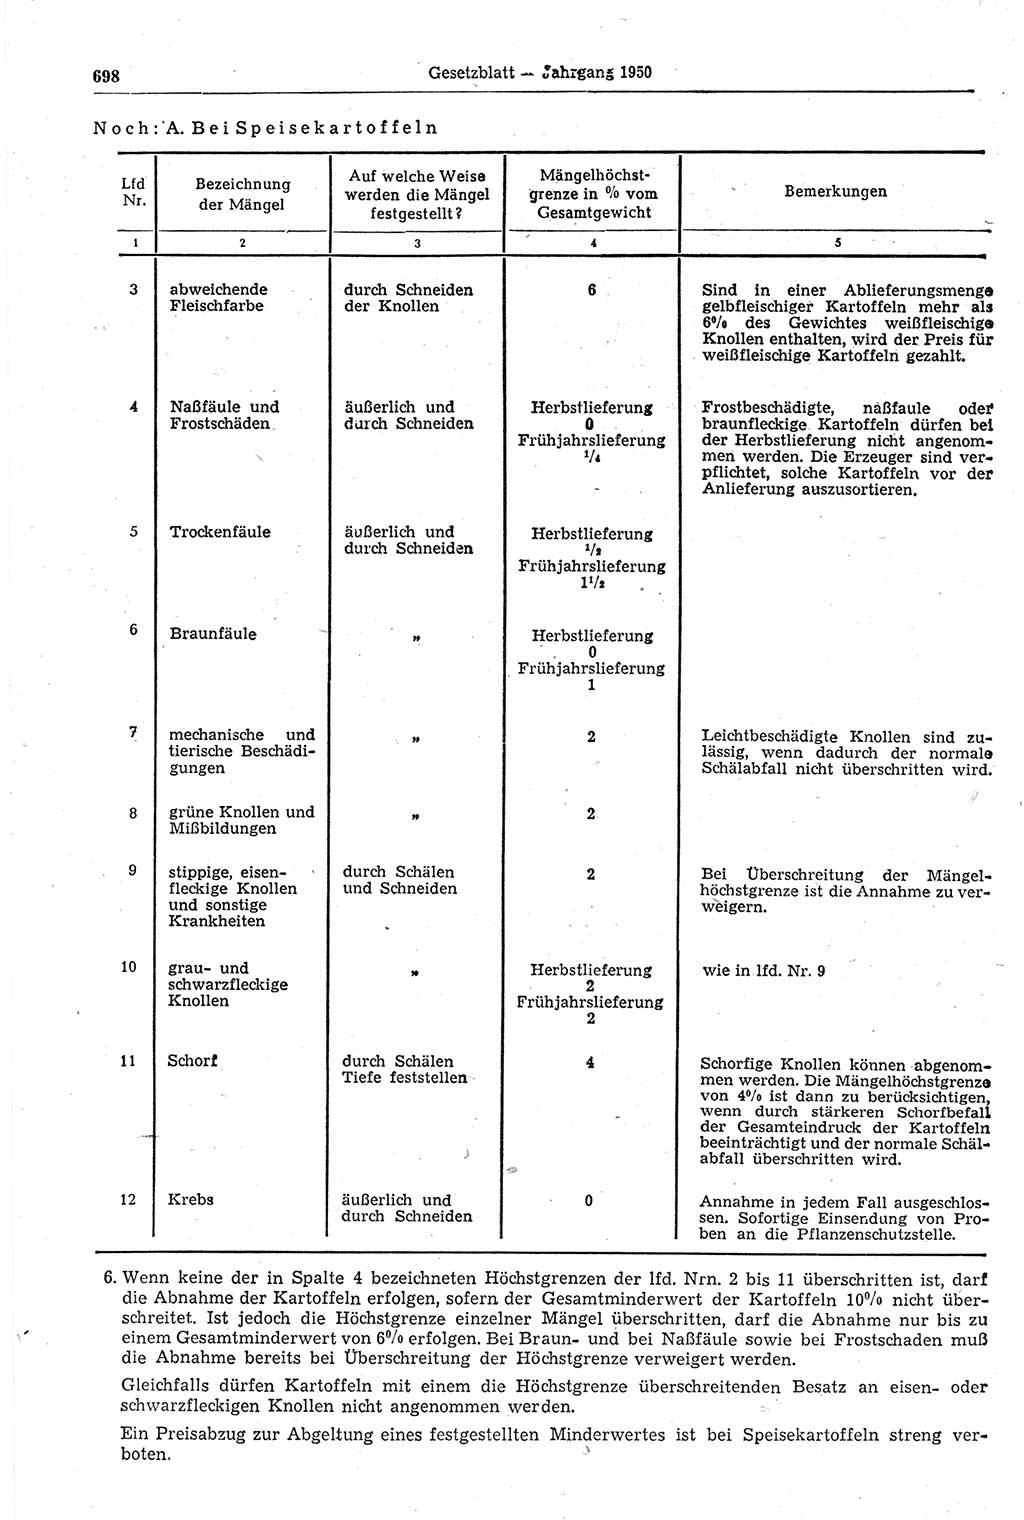 Gesetzblatt (GBl.) der Deutschen Demokratischen Republik (DDR) 1950, Seite 698 (GBl. DDR 1950, S. 698)